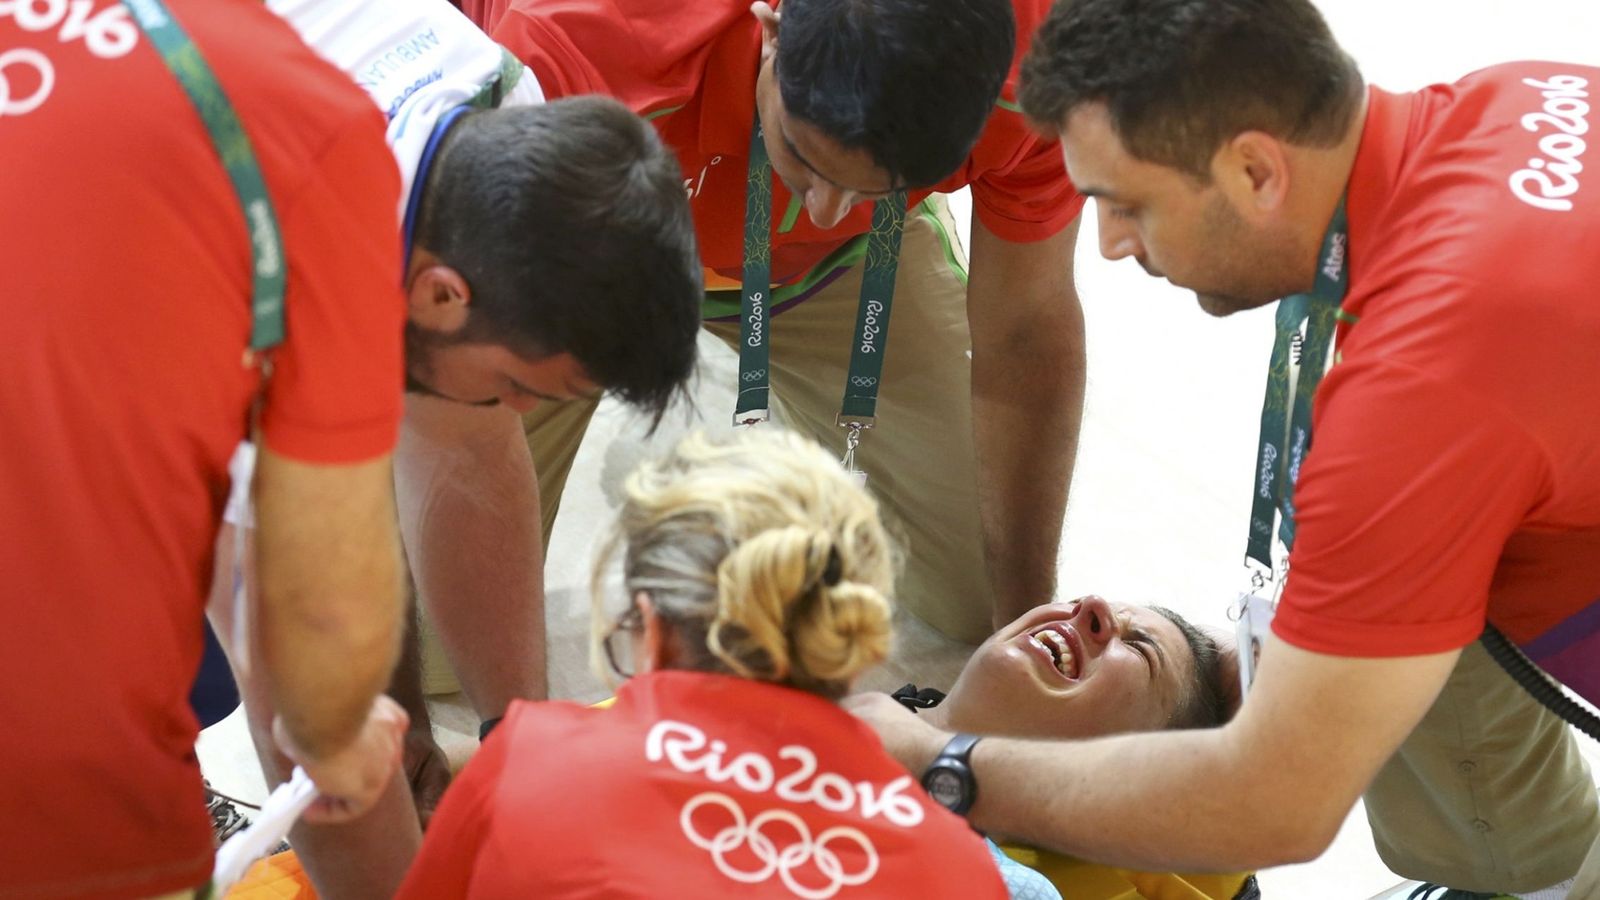 Foto: Las muecas de dolor de Hoskins. (Paul Hanna/Reuters)